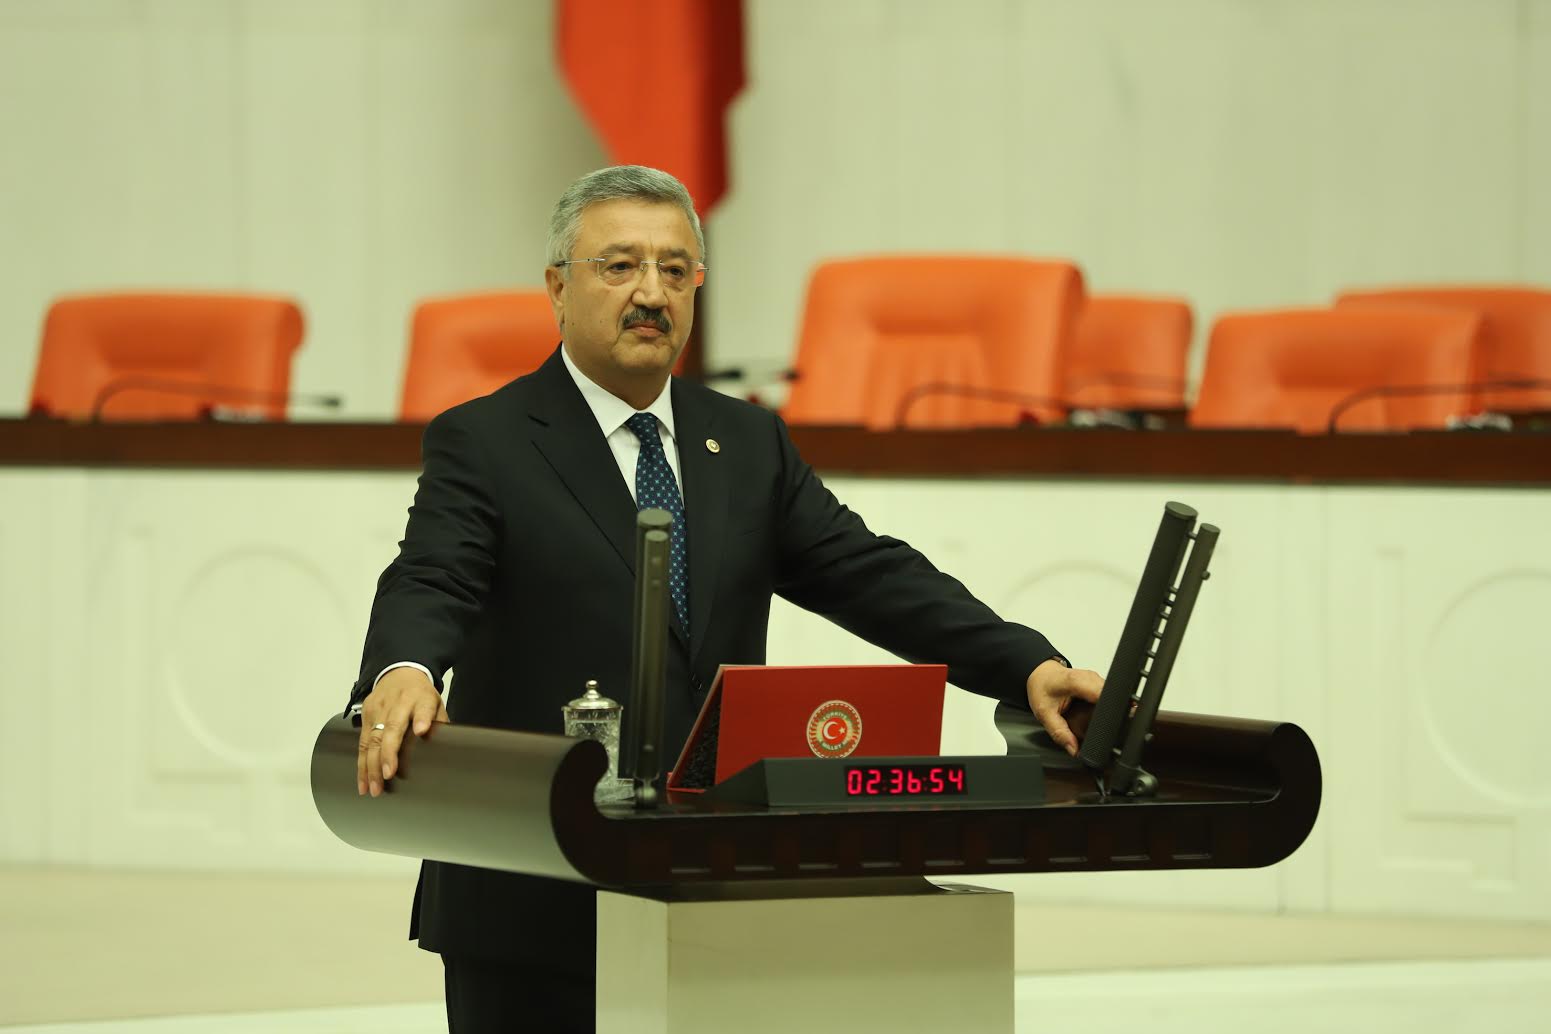 AK Parti İzmir Milletvekili Necip Nasır: "Yarınlara ve gençlere güvenimiz tamdır"